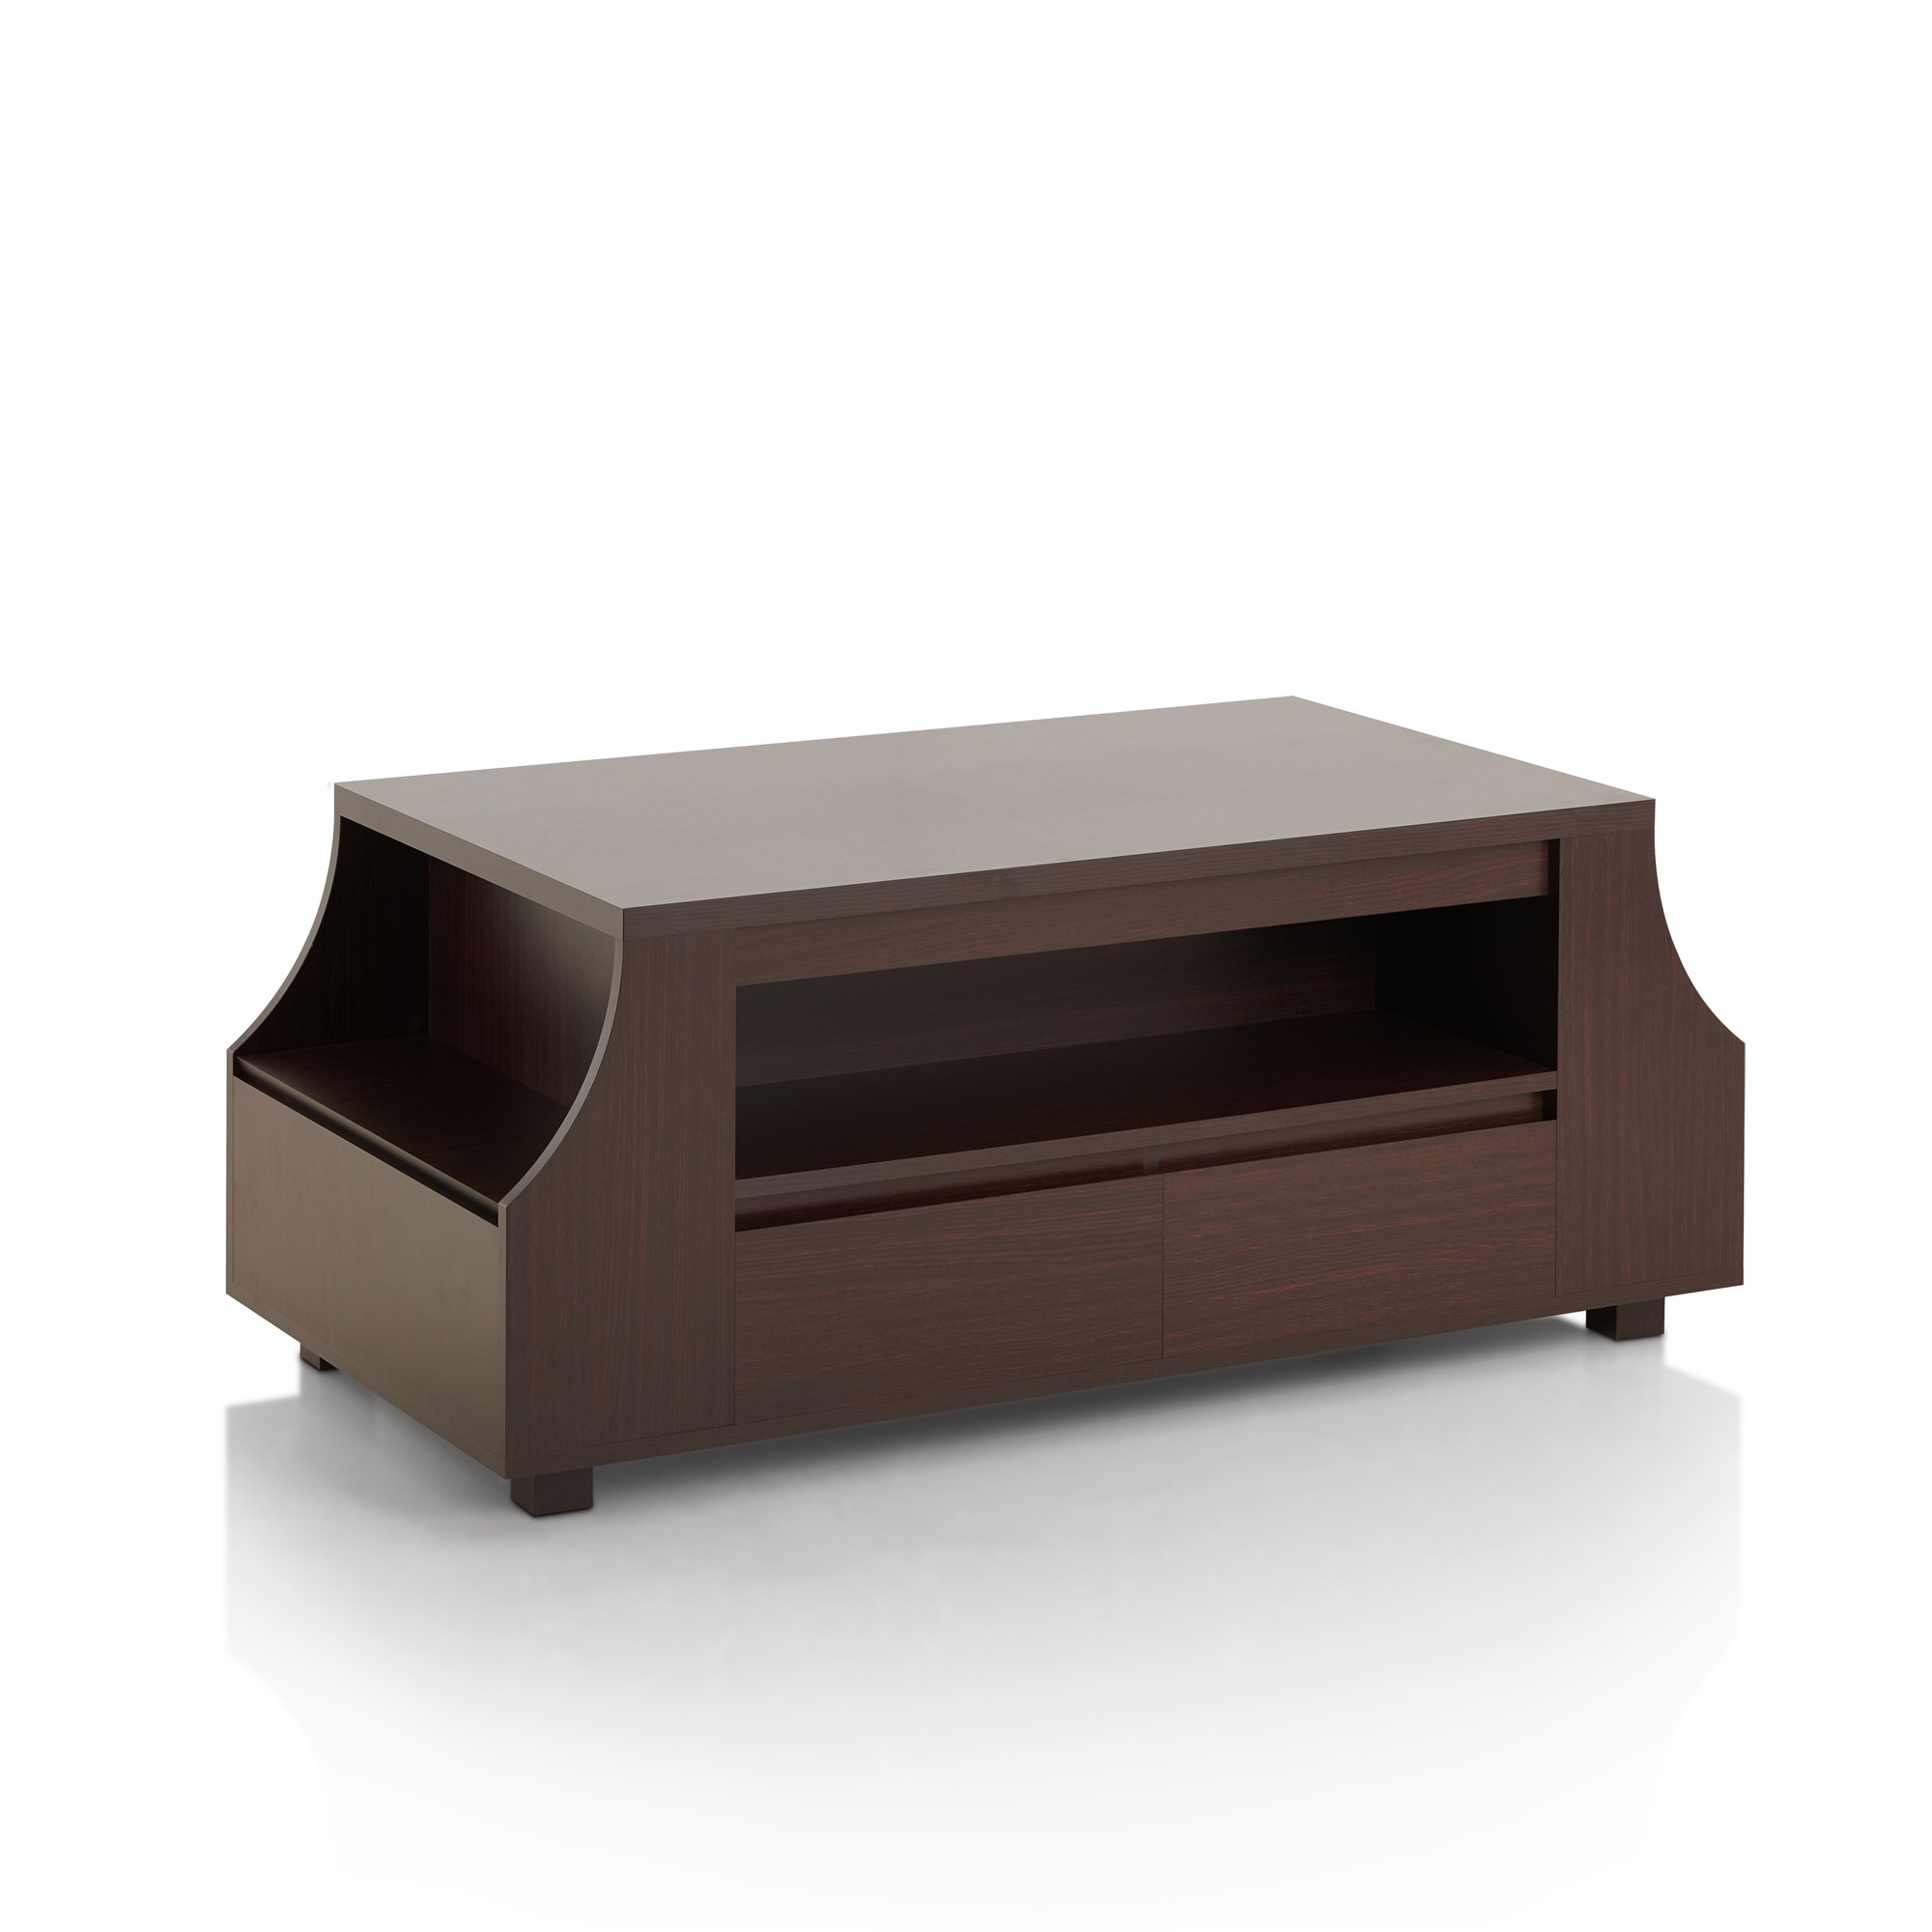 Furniture of America Lagardi Open Shelf Coffee Table